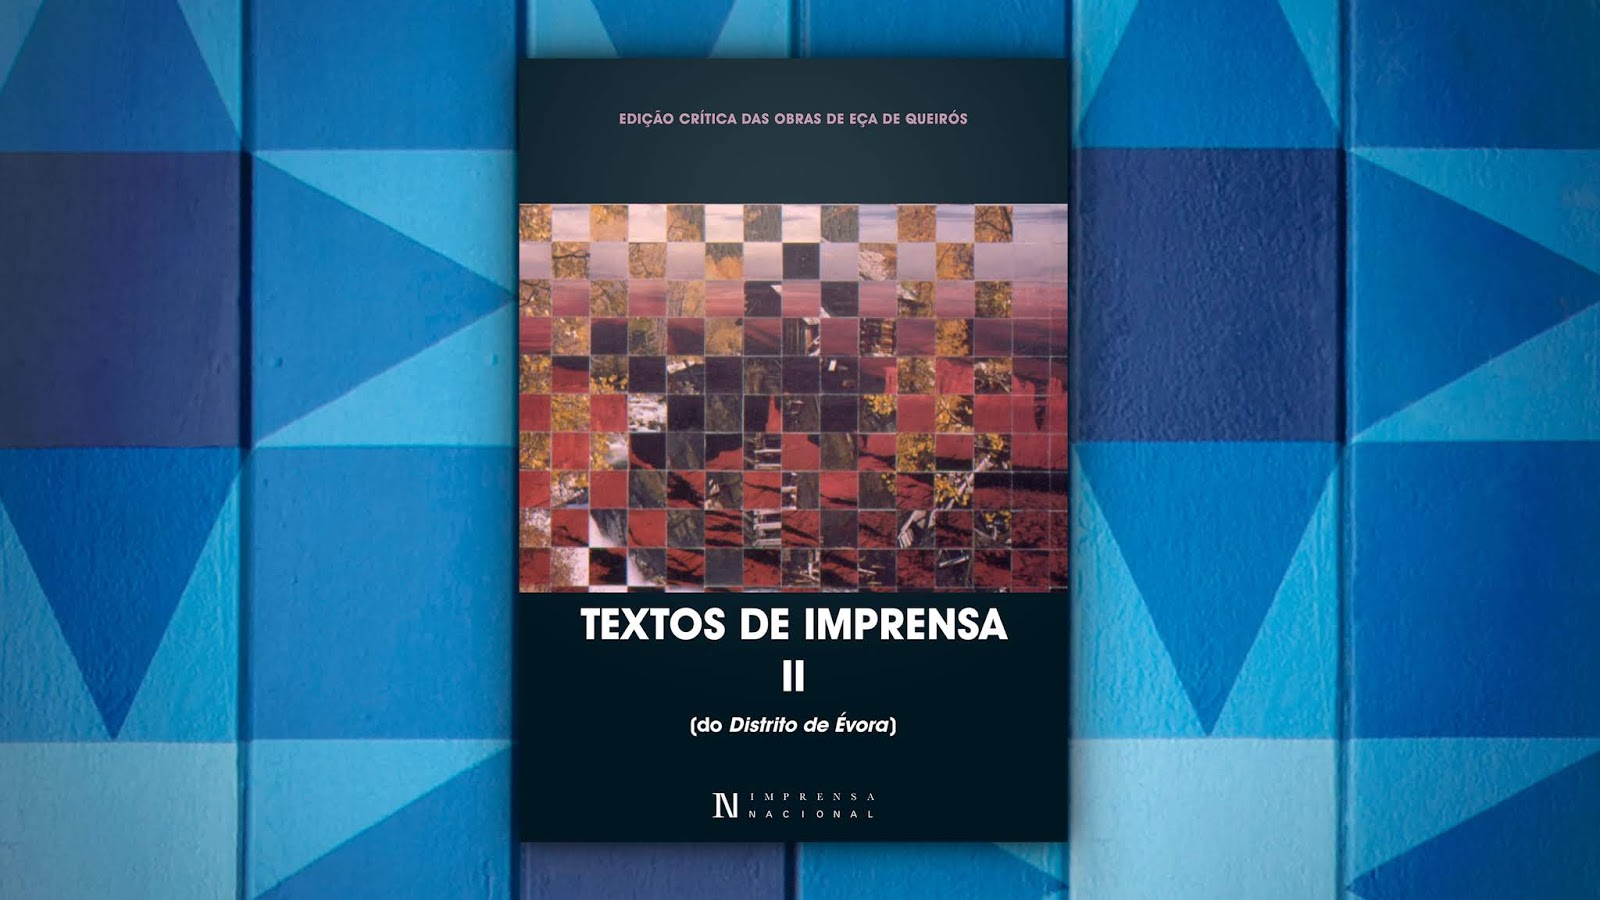 Novidades Editoriais | Textos de Imprensa II (do Distrito de Évora) | Edição Crítica das Obras de Eça de Queirós